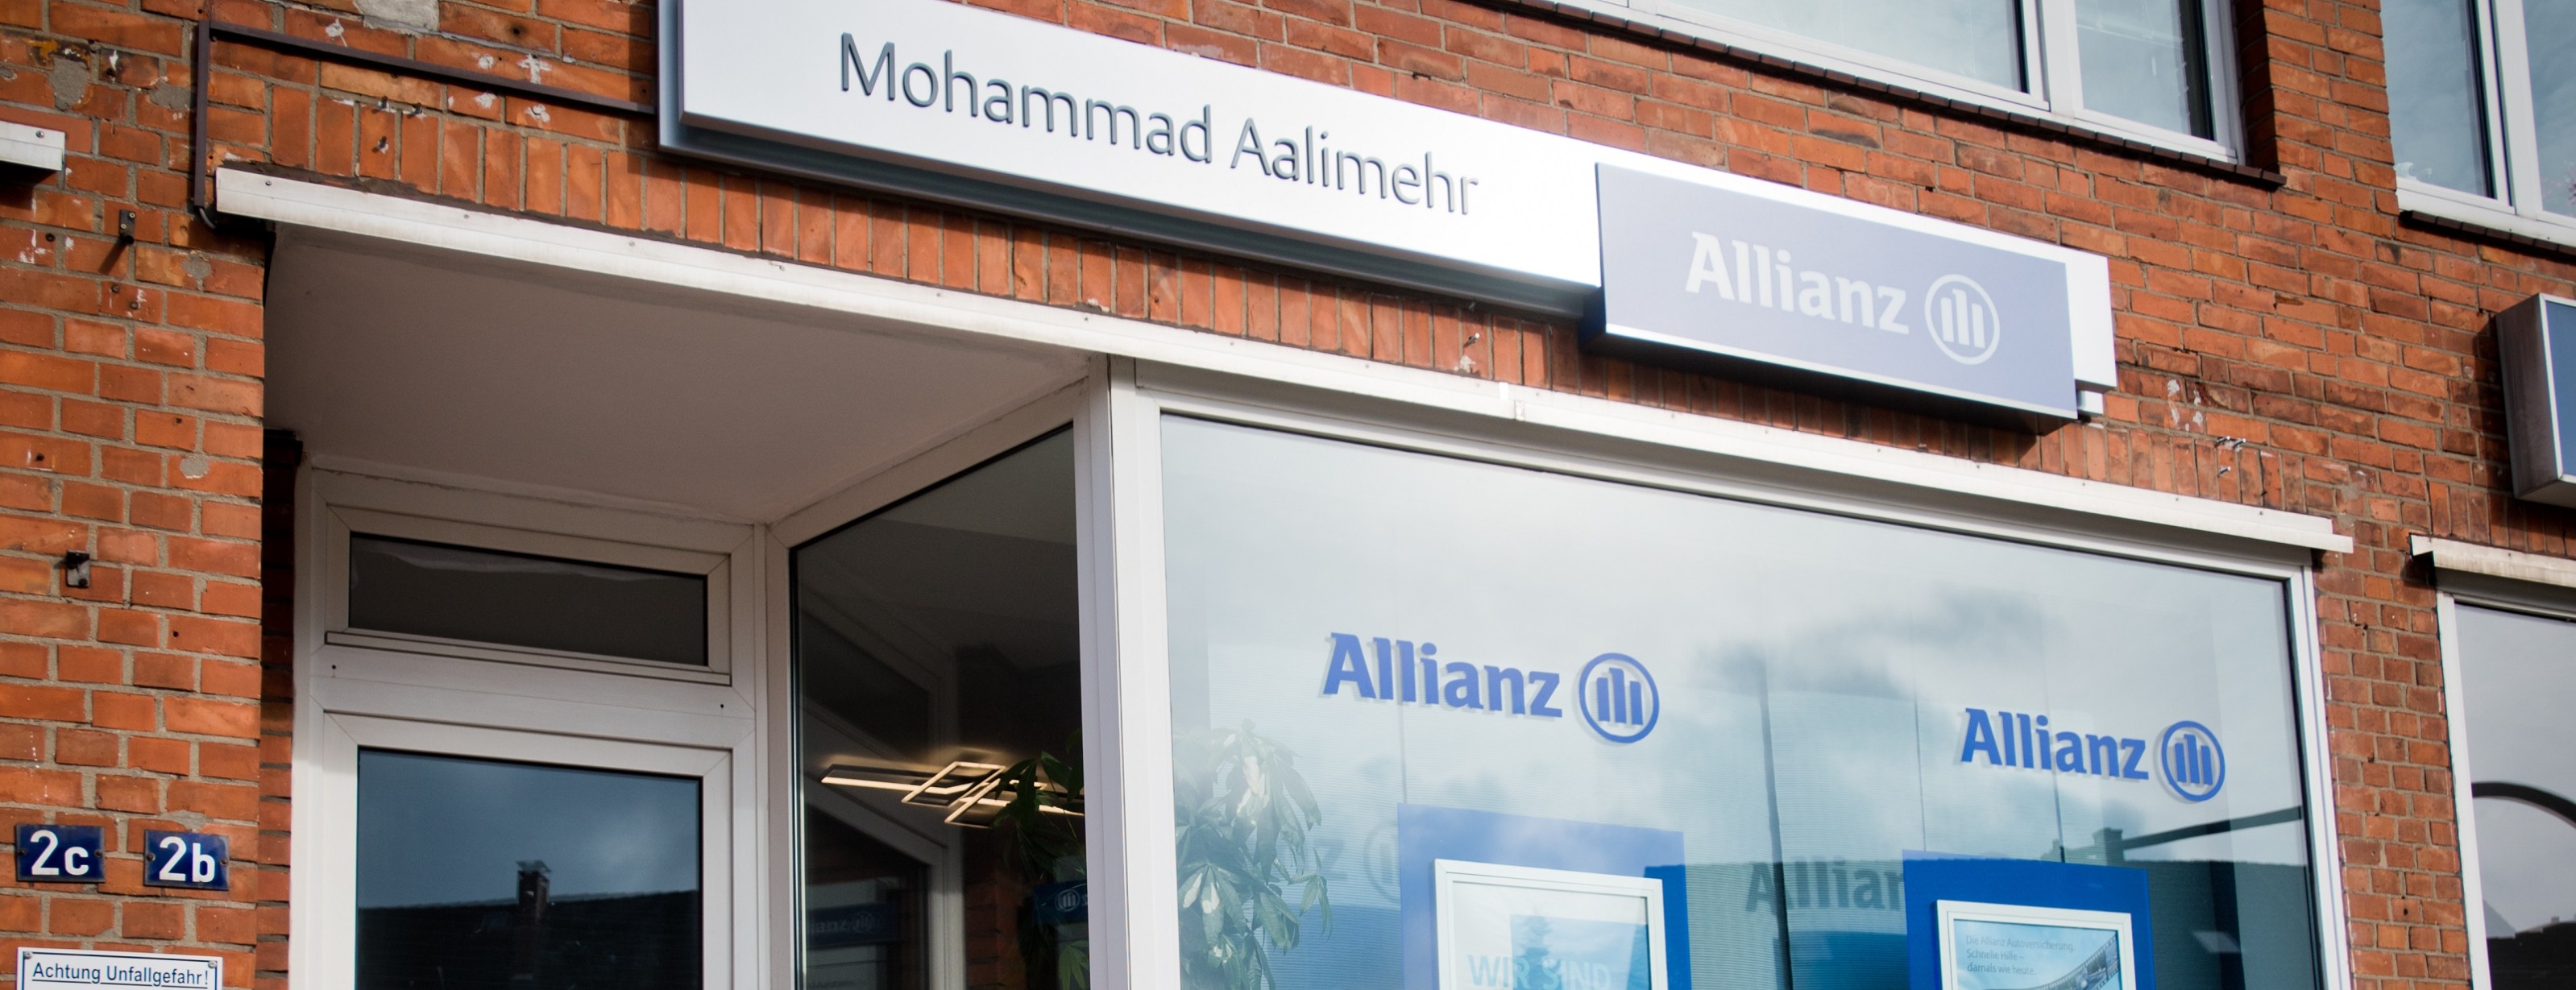 Allianz Versicherung Mohammad Aalimehr Hamburg - Außensicht